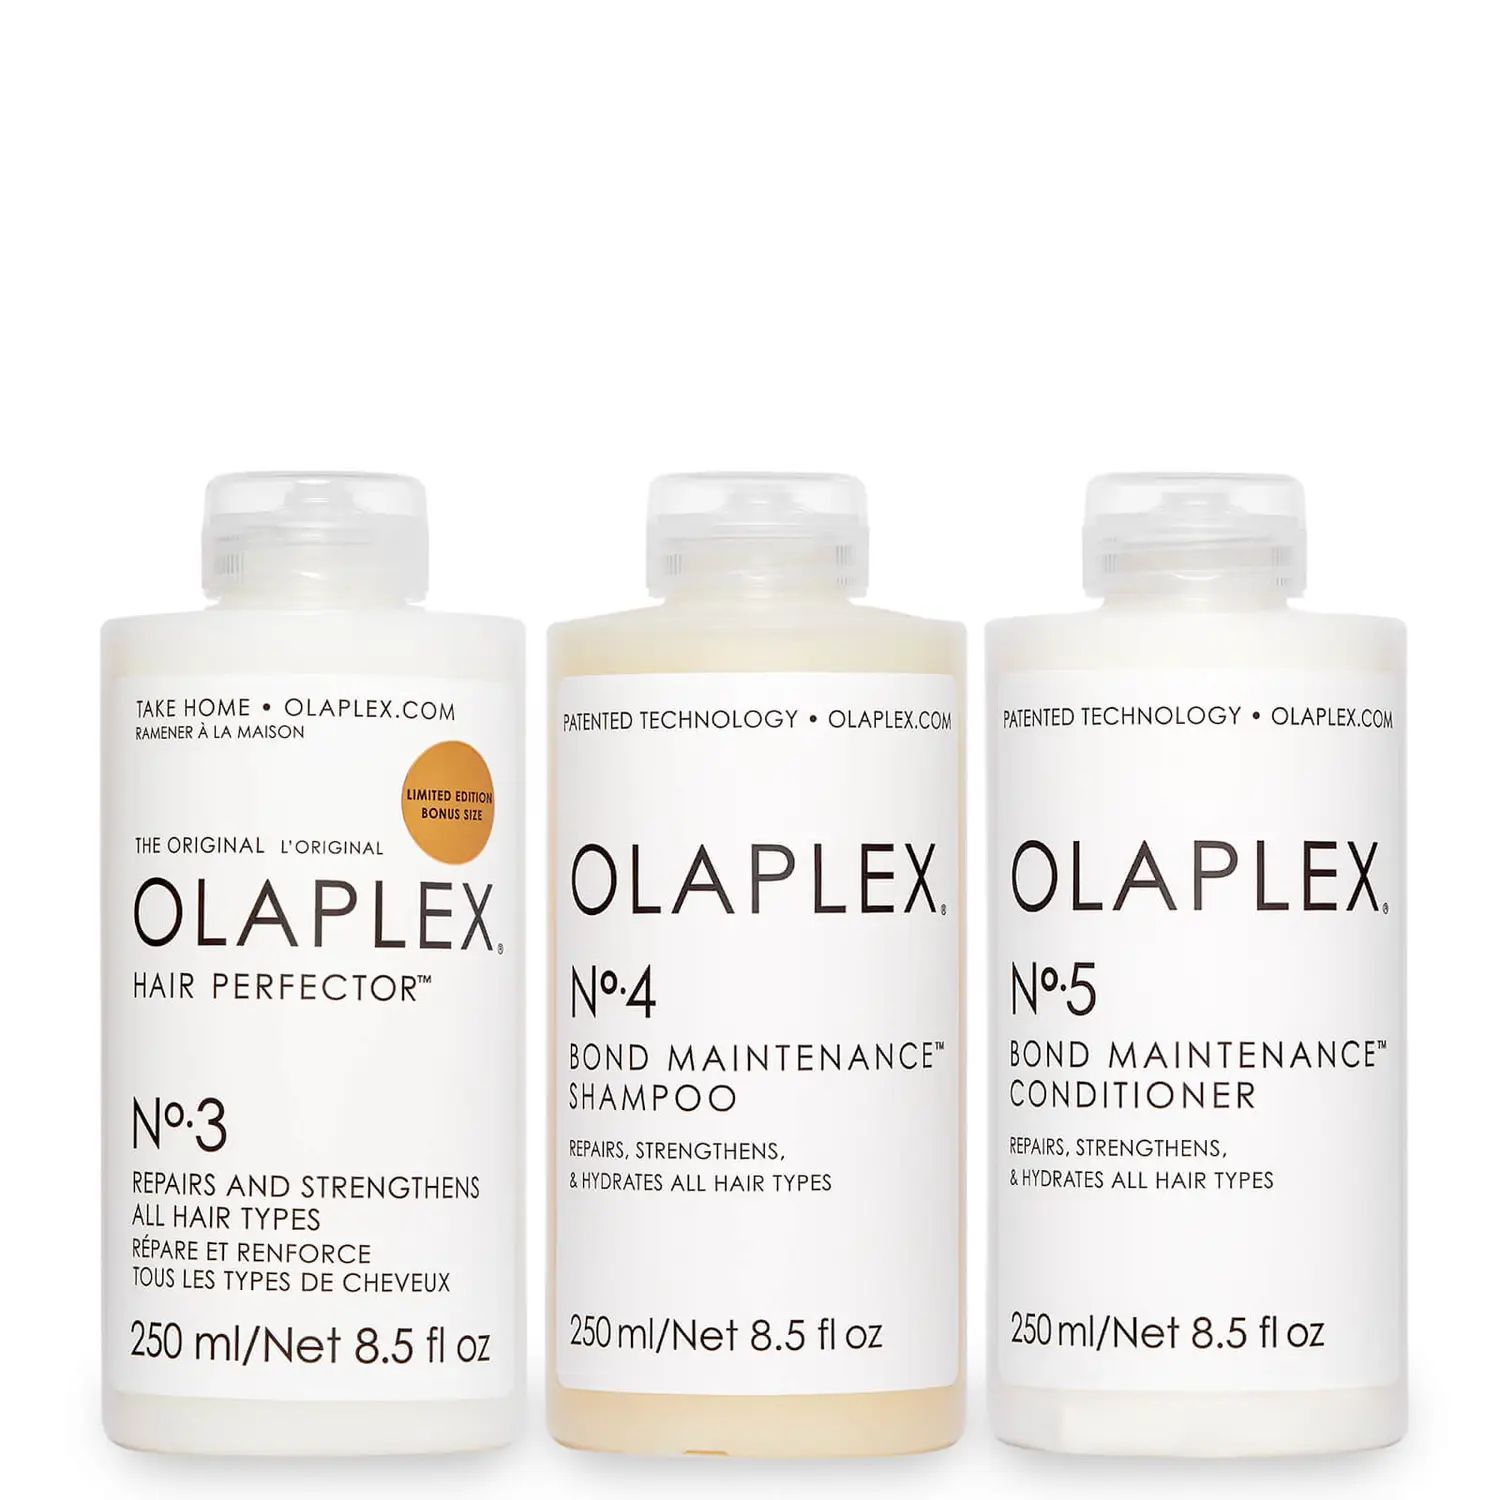 Dermstore Exclusive Olaplex Essentials Kit | Dermstore